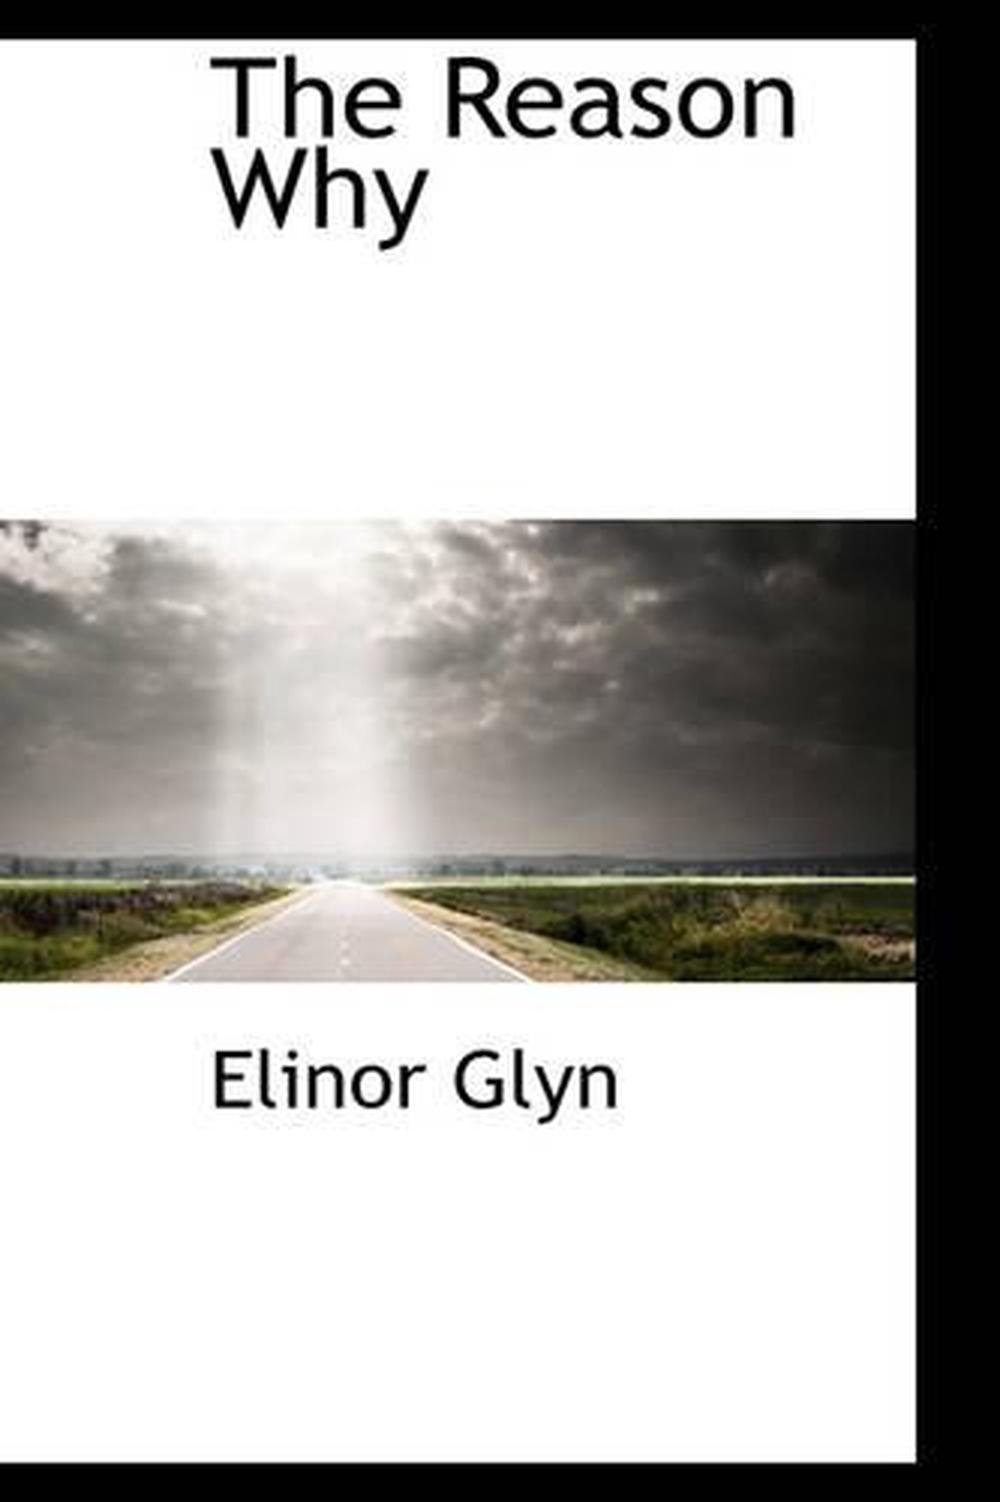 The Reason Why by Elinor Glyn